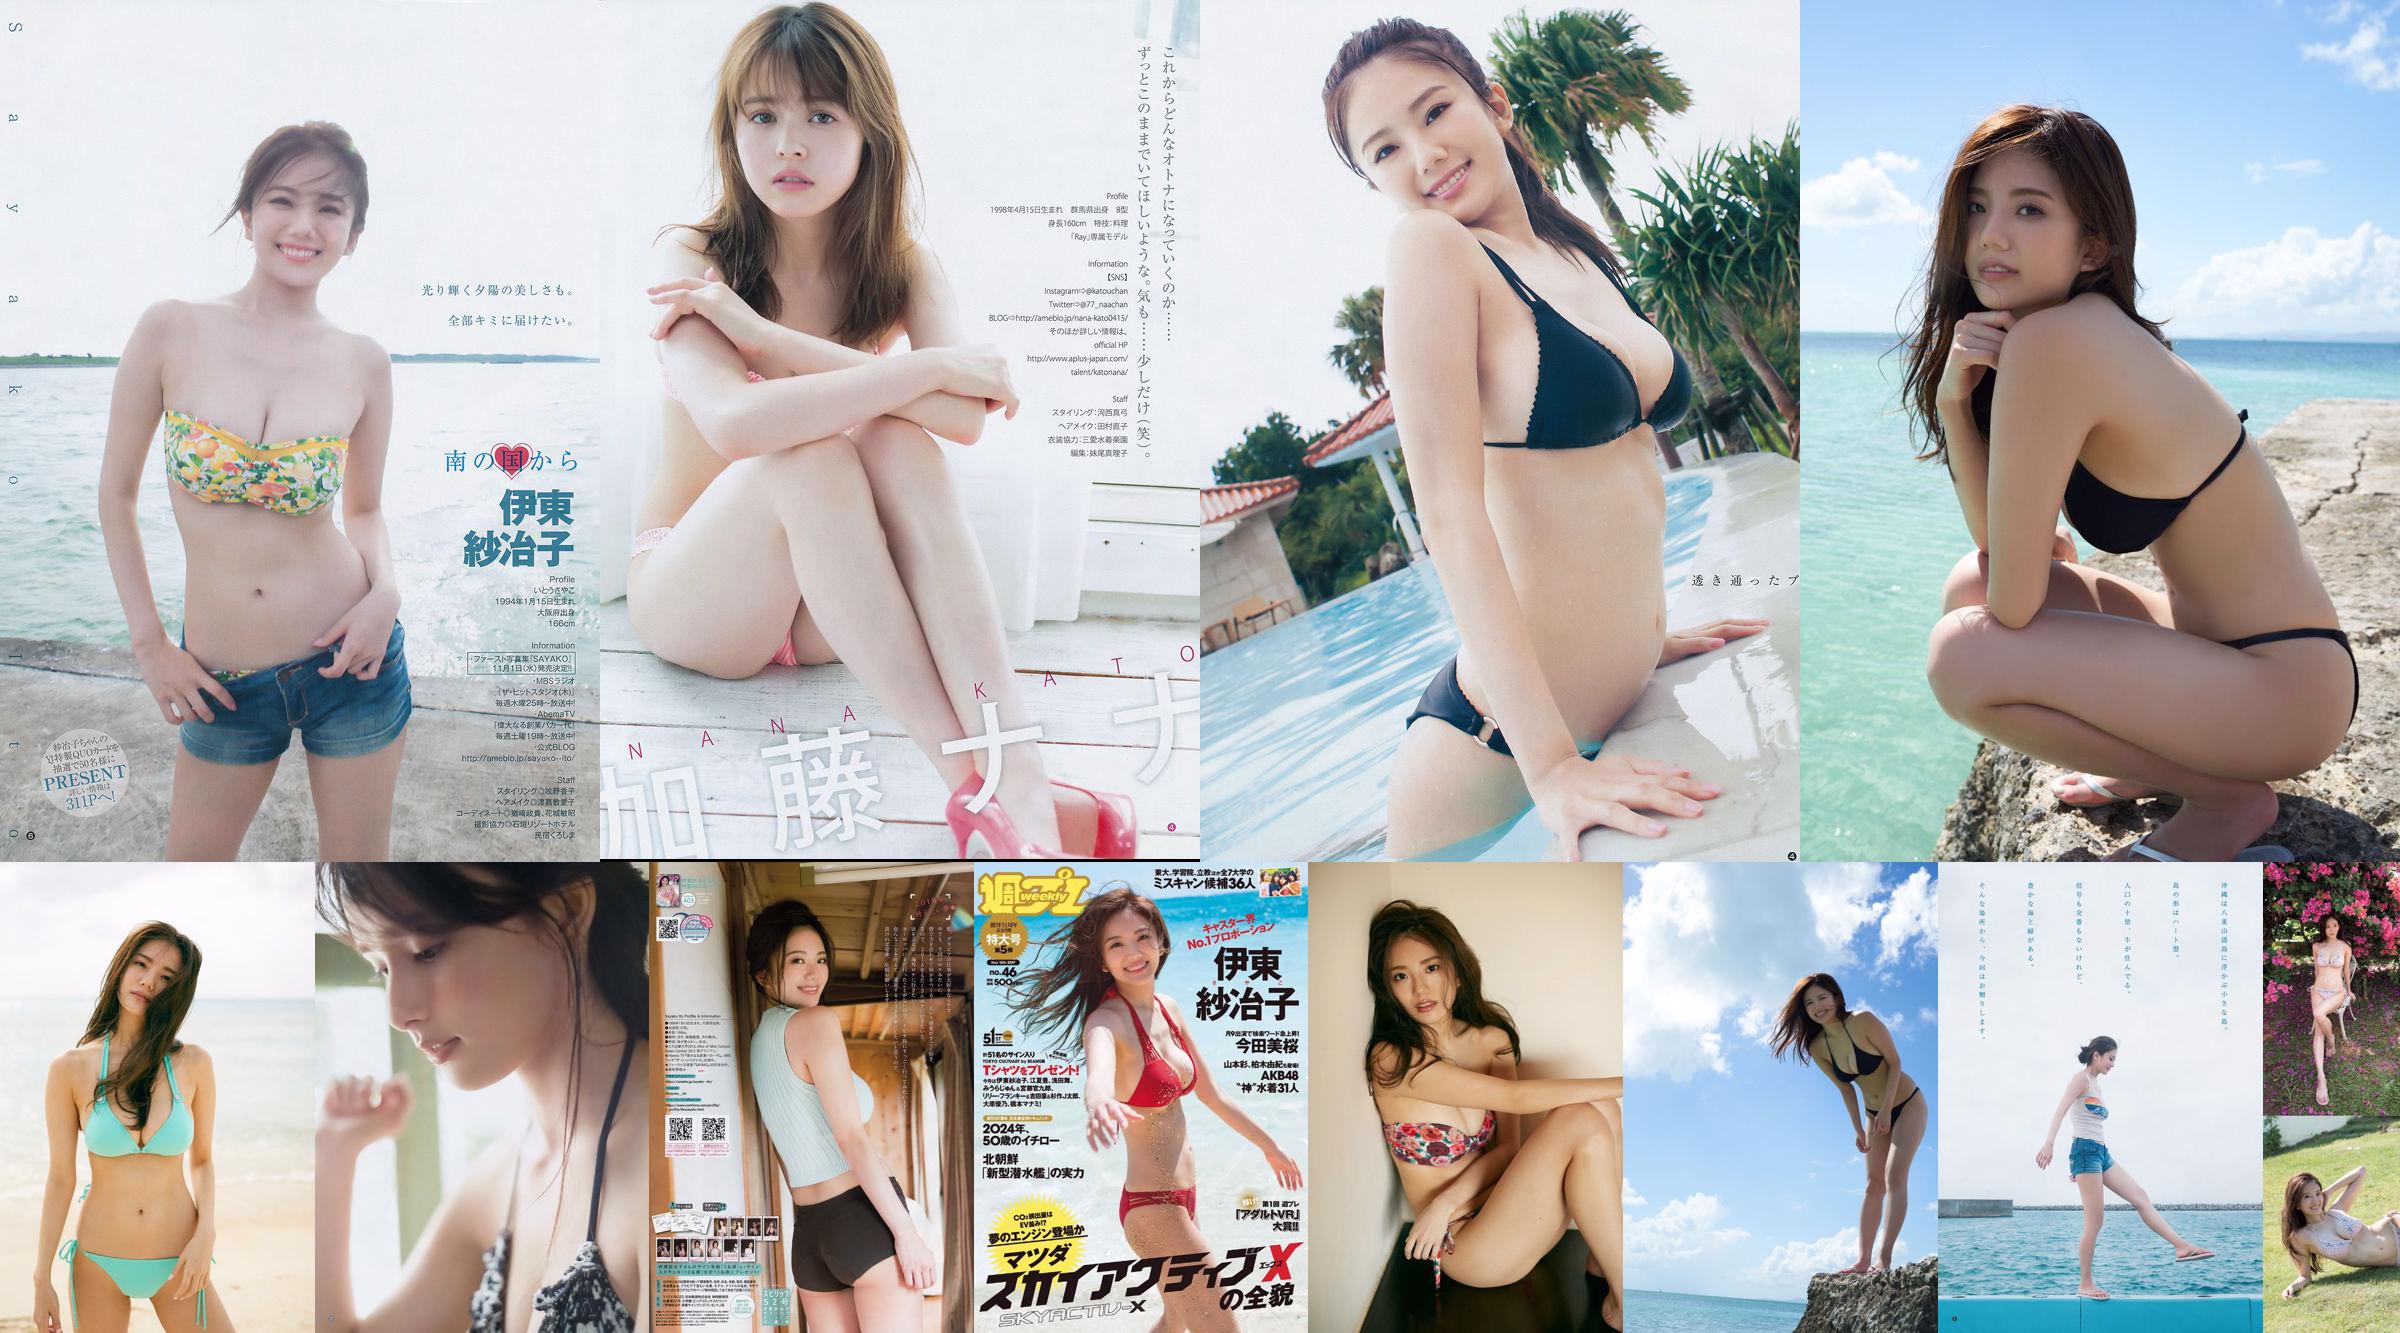 Ito Sayeko, Mima Reiko, Sugimoto Yumi, Sato Reina, Yoshiki りさ Toyama Akiko, Naninao [Weekly Playboy] 2016 No.36 Photo Magazine No.269c4f Page 6